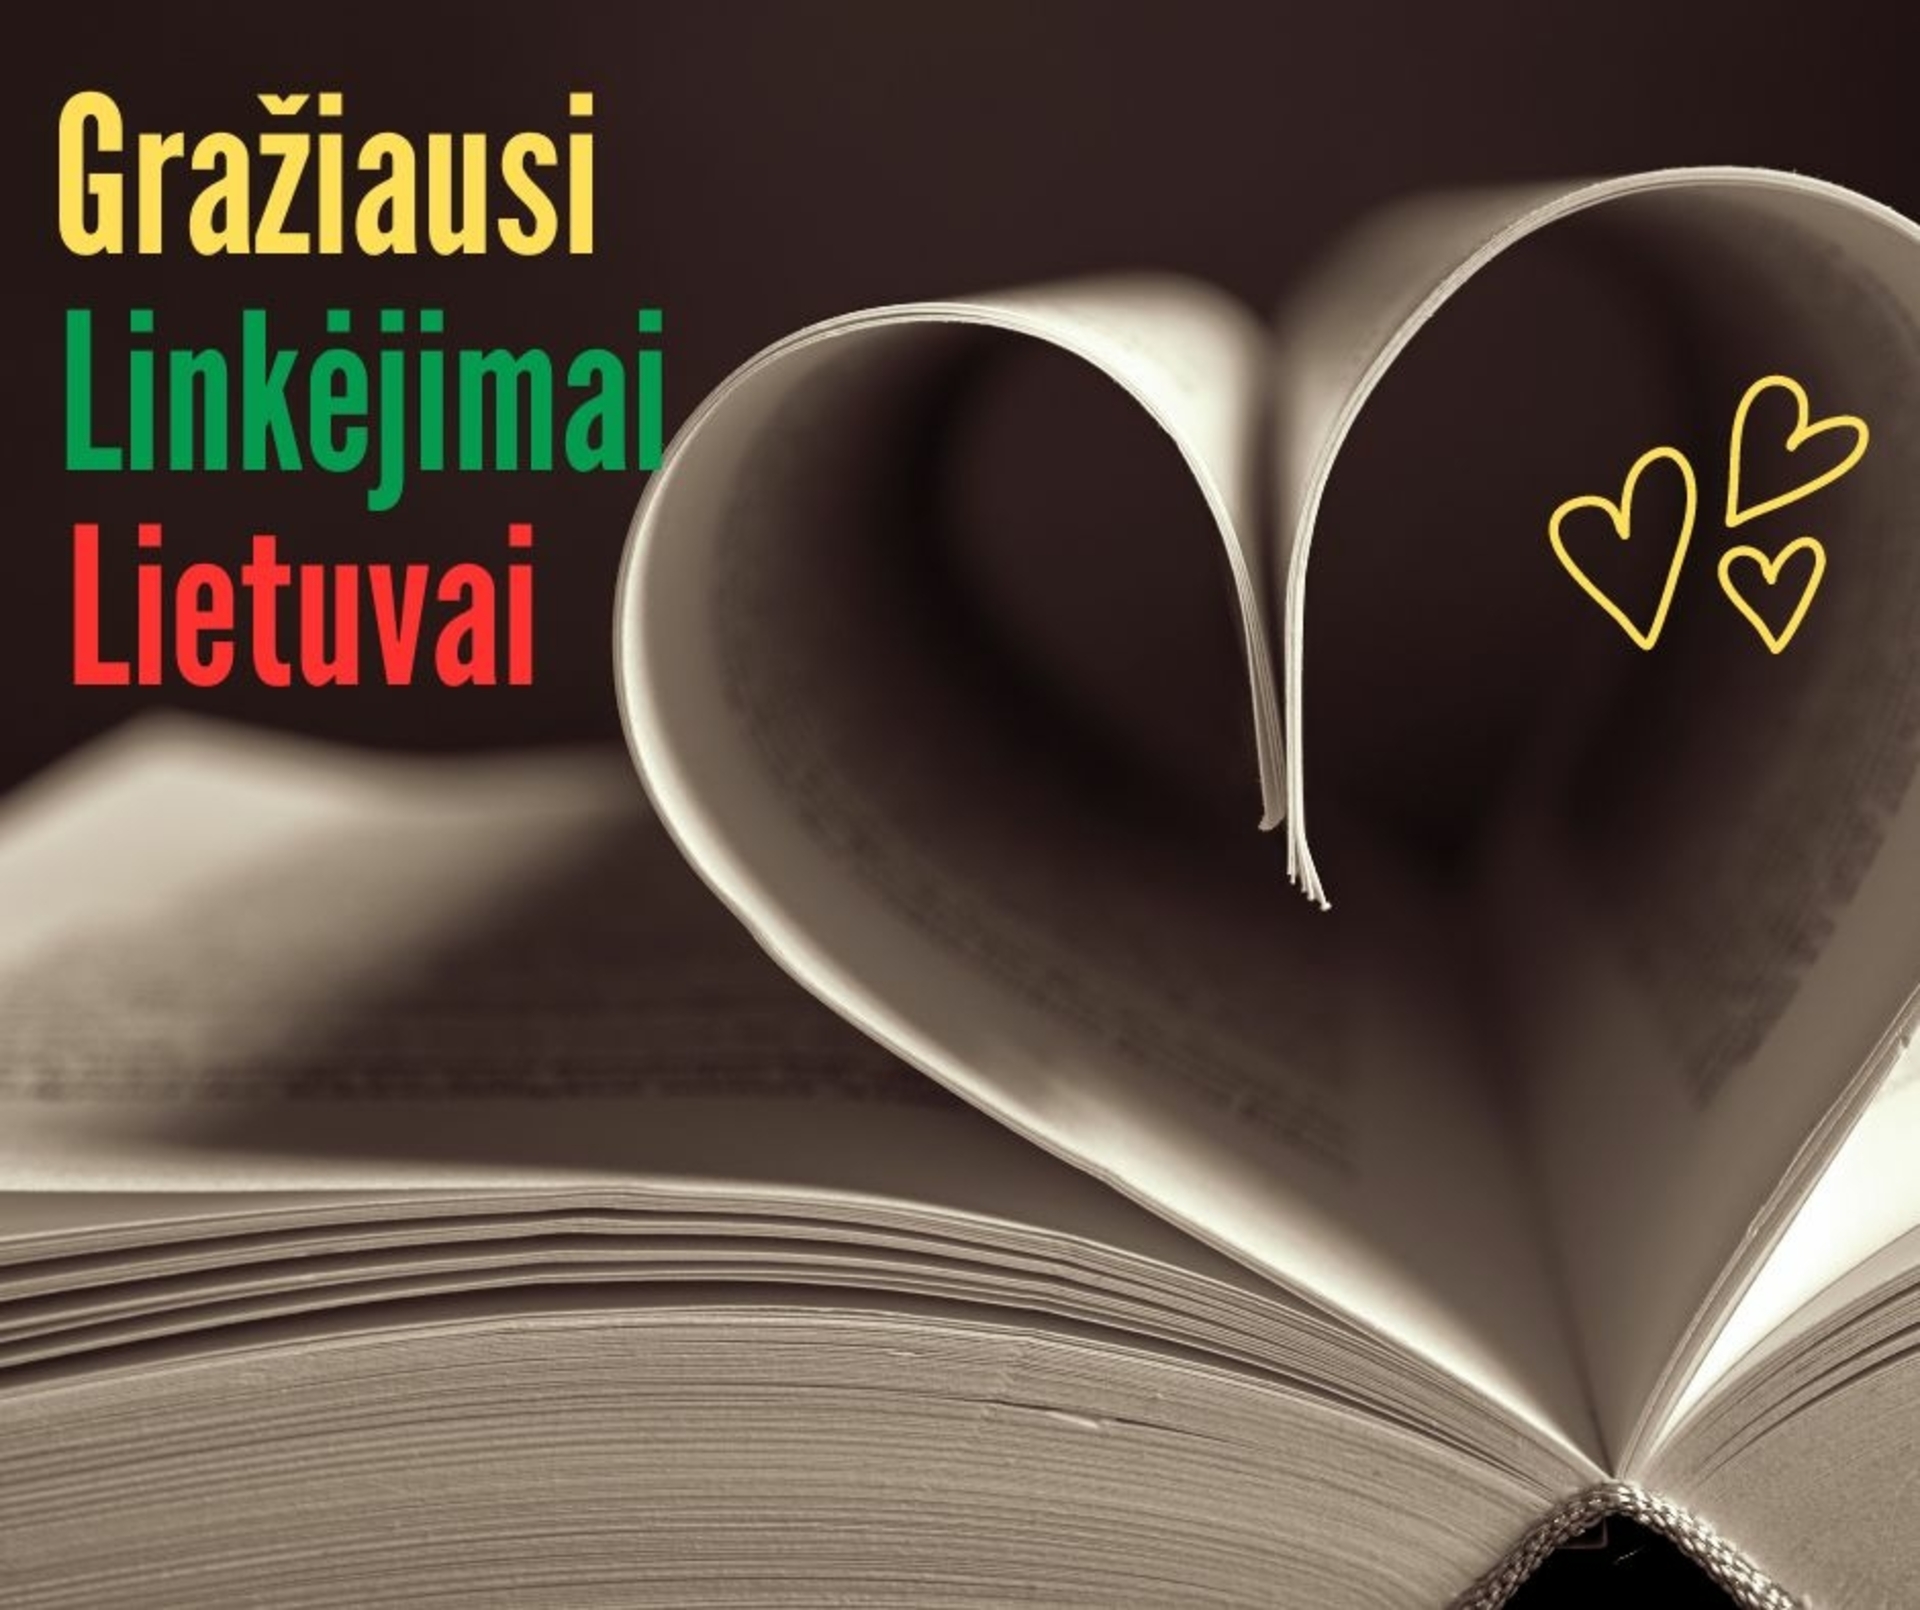 Die Initiative „Beste Wünsche nach Litauen“ widmet sich dem 11. März. - für den Tag der Wiederherstellung der Unabhängigkeit Litauens